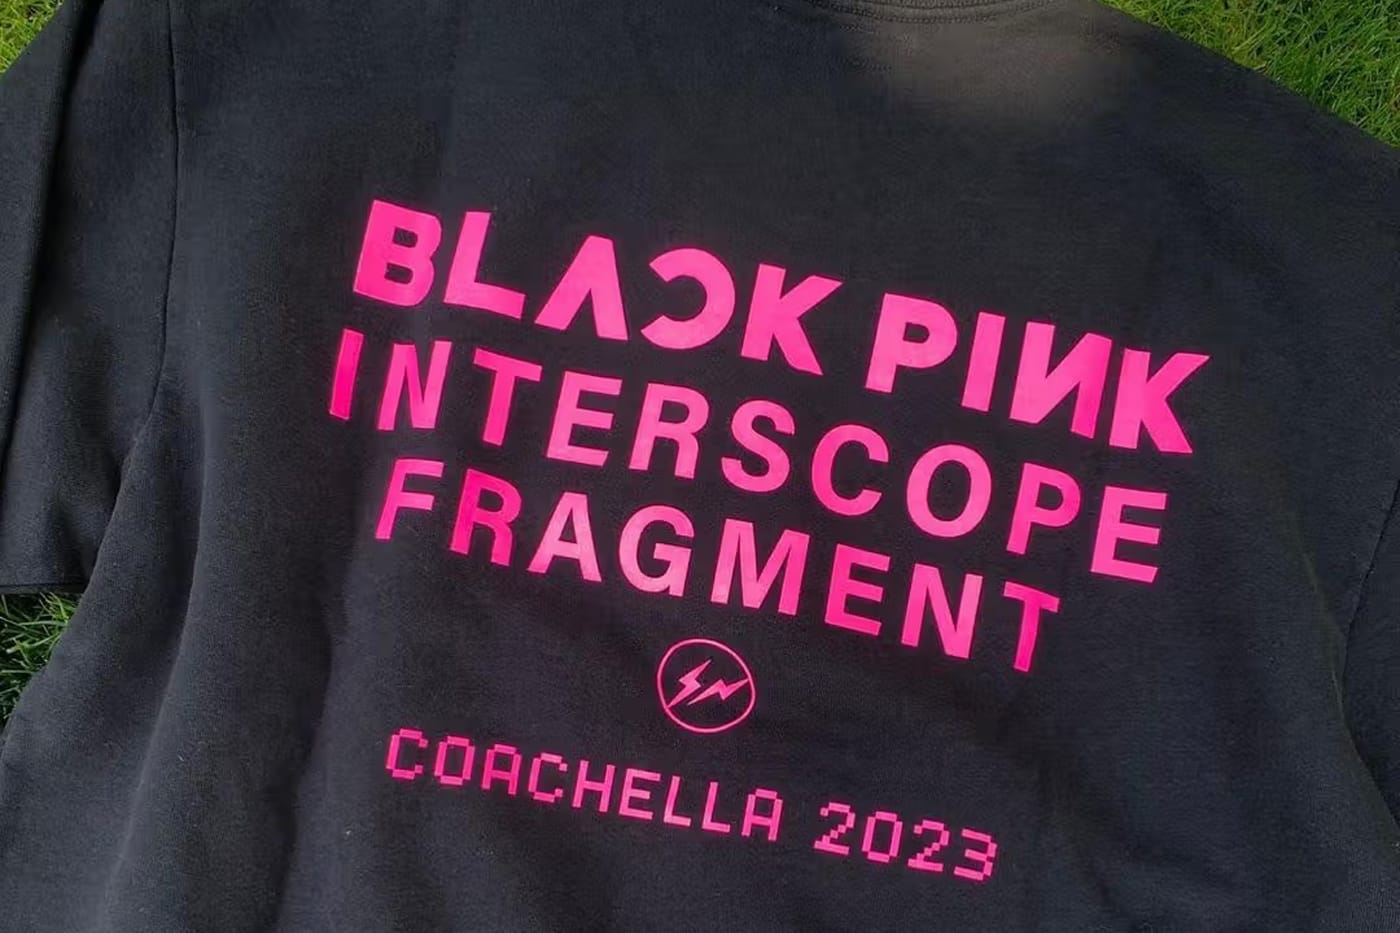 ブラックピンク x フラグメント x インタースコープのTシャツが発売か